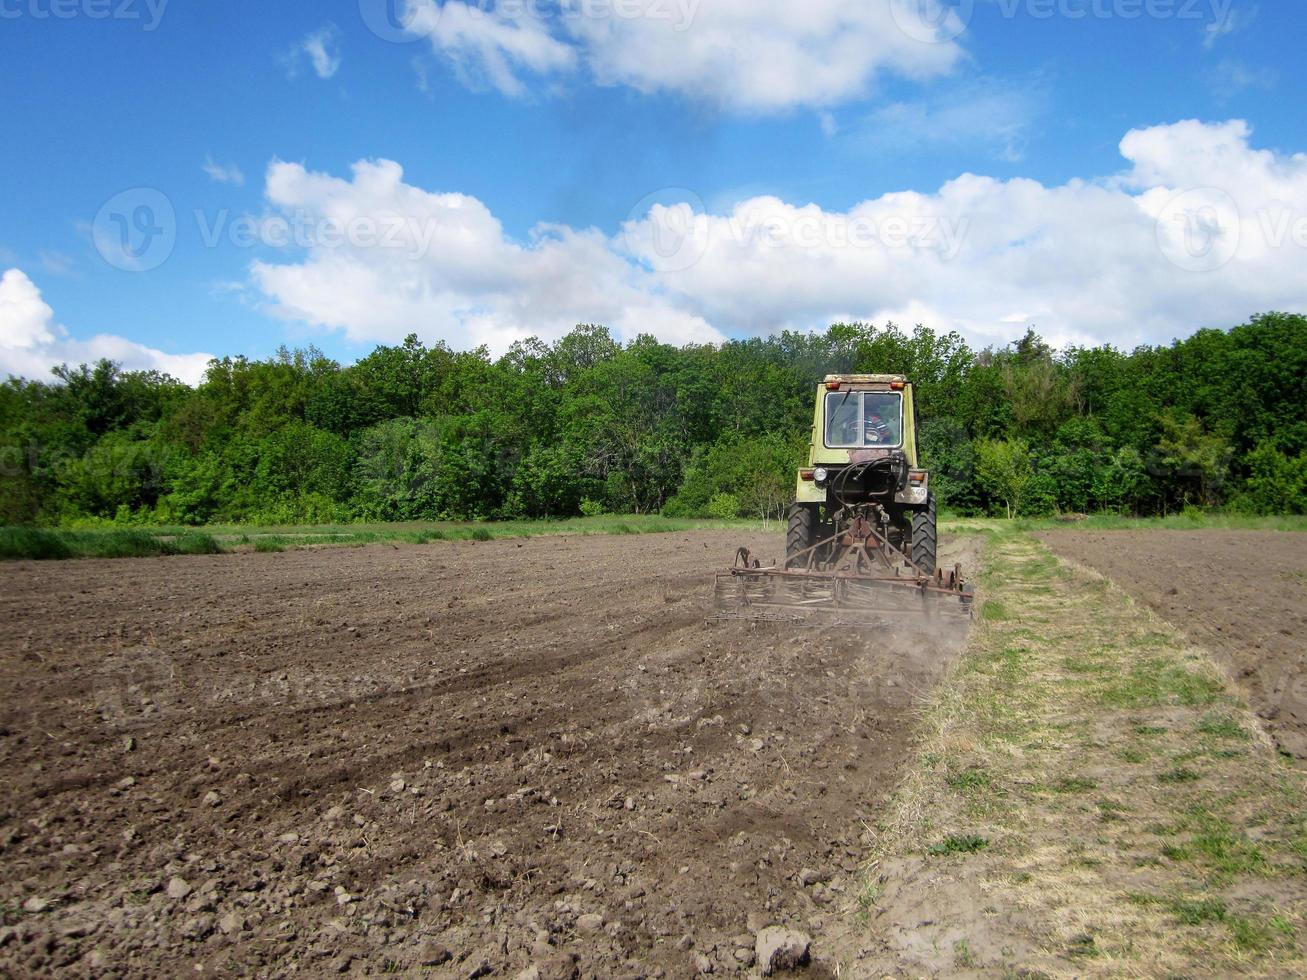 geploegd veld door tractor in bruine grond op open platteland natuur foto